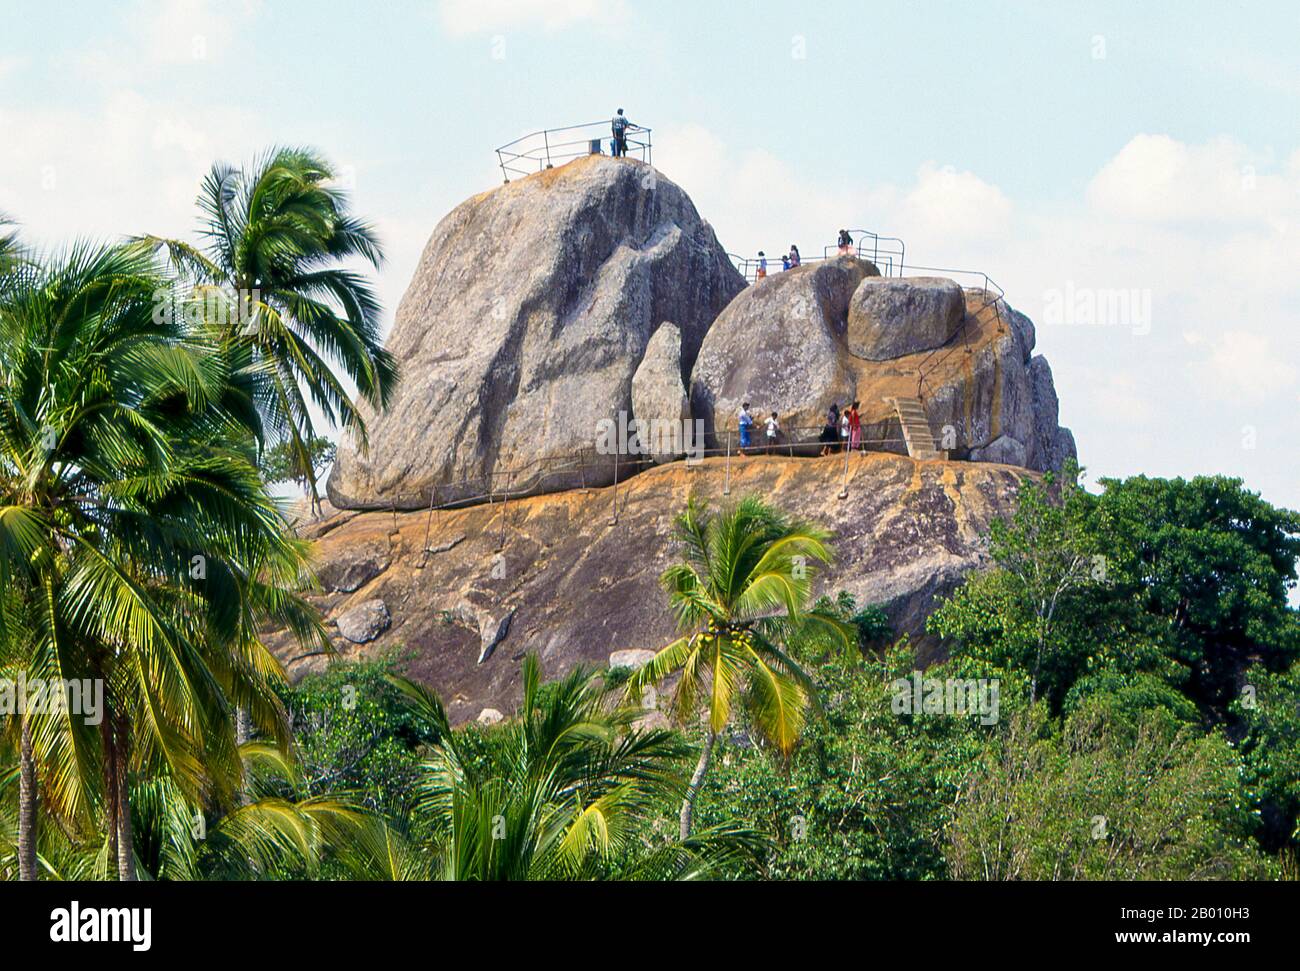 Sri Lanka: Visitantes en lo alto de la Gala Aradhana (Meditation Rock), Mihintale. Mihintale es un pico de montaña cerca de Anuradhapura que se cree por Sri Lankans para ser el lugar de un encuentro entre el monje budista Mahinda y el rey Devanampiyatissa que inauguró la presencia del budismo en Sri Lanka. Ahora es un lugar de peregrinación, y el sitio de varios monumentos religiosos y estructuras abandonadas. Foto de stock